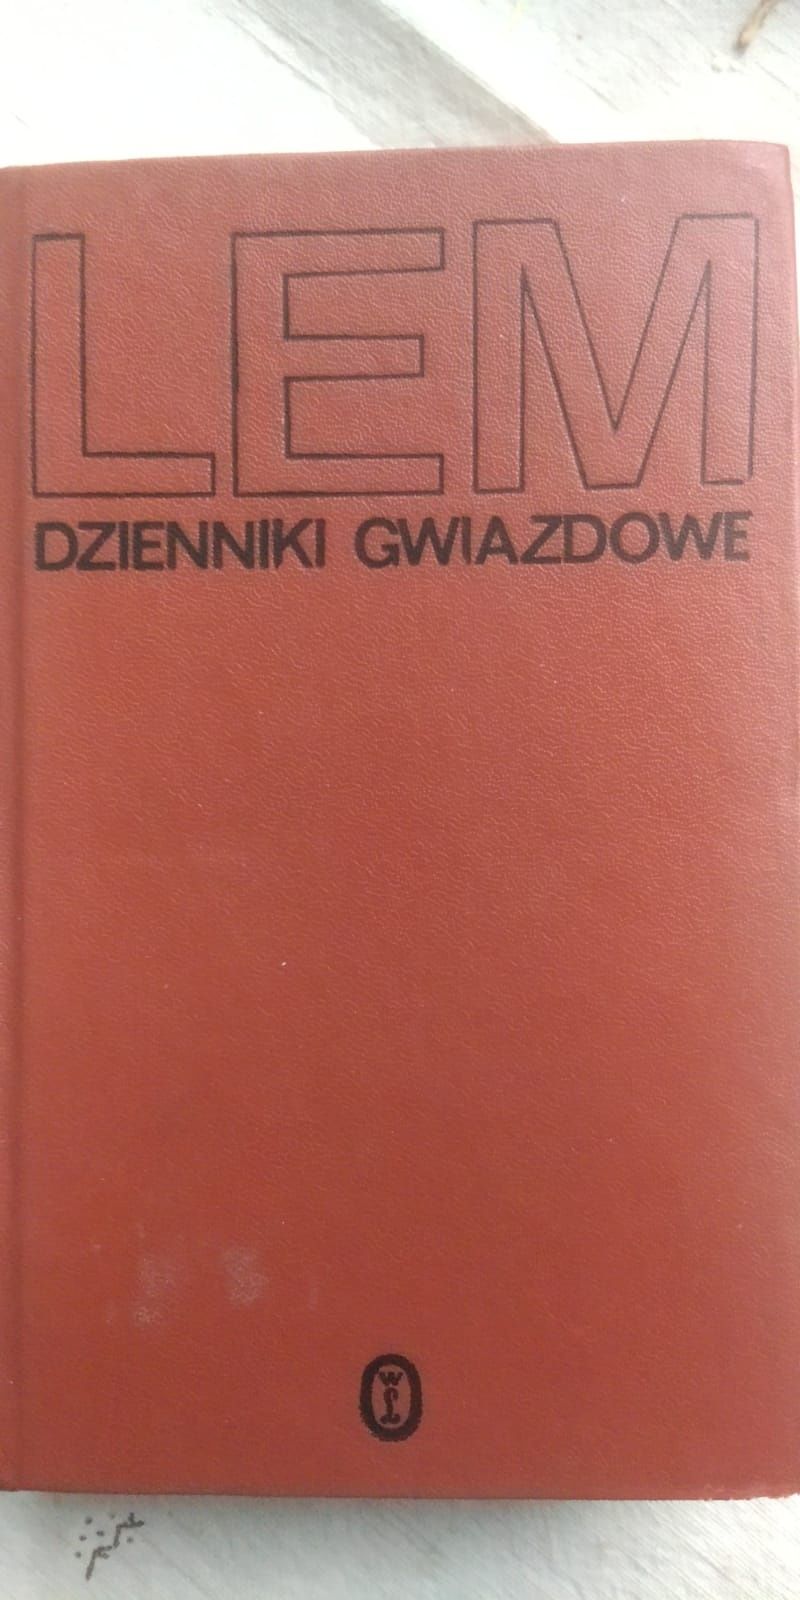 Książka z 1982 roku Lem "Dzienniki gwiazdowe"